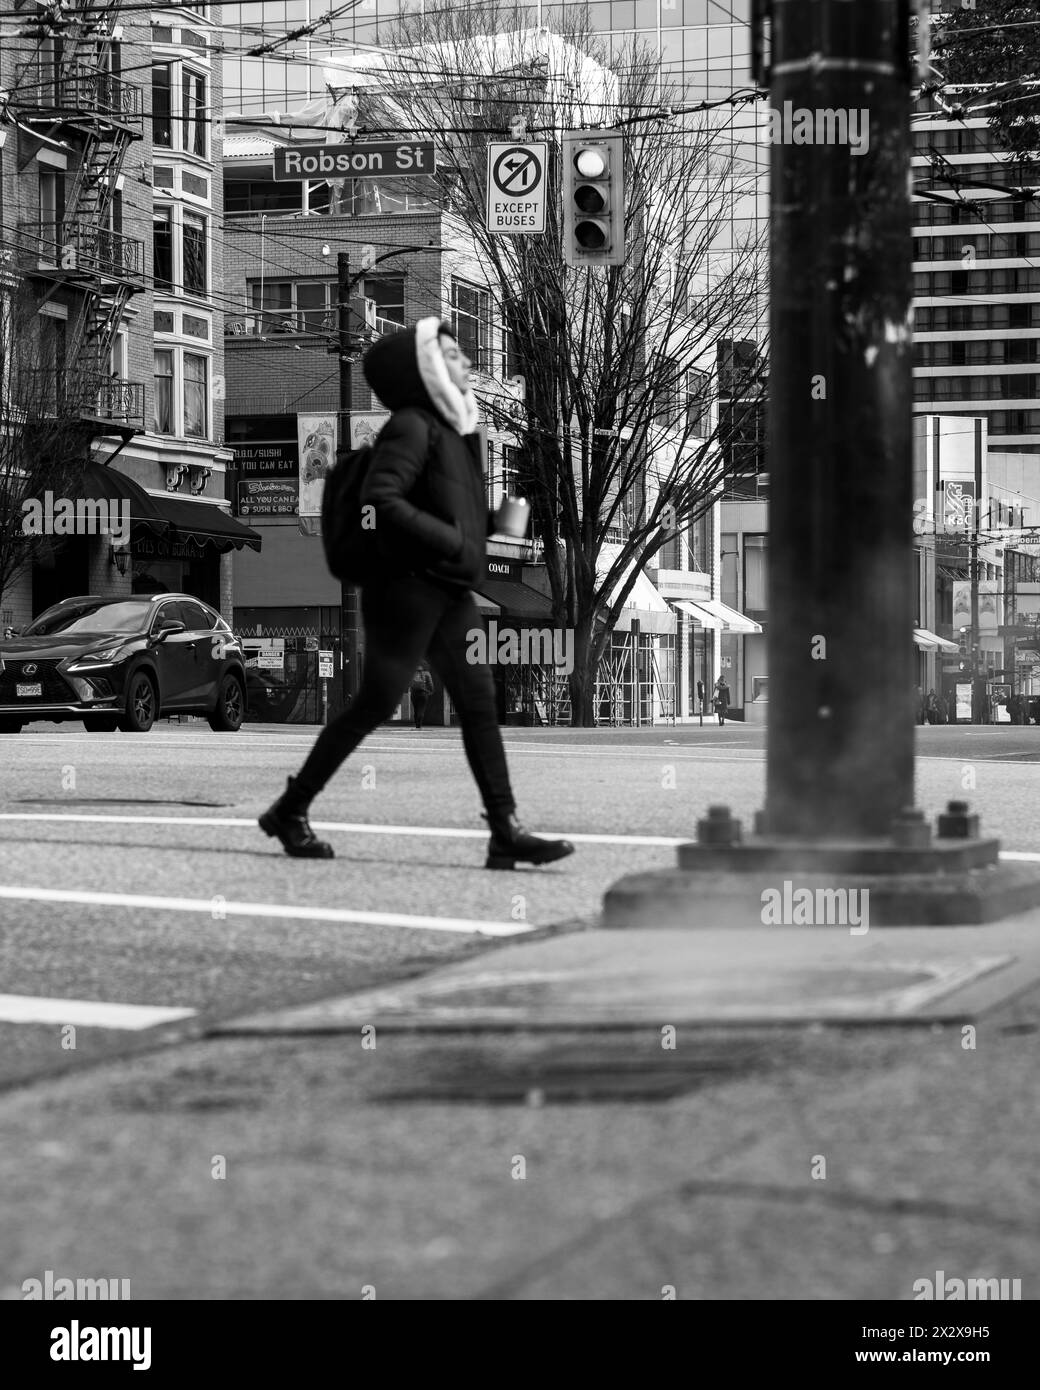 Une vue en noir et blanc à angle bas de l'intersection des rues Robson et Burrard avec un échappement de vapeur sur le trottoir et une personne marchant. Banque D'Images